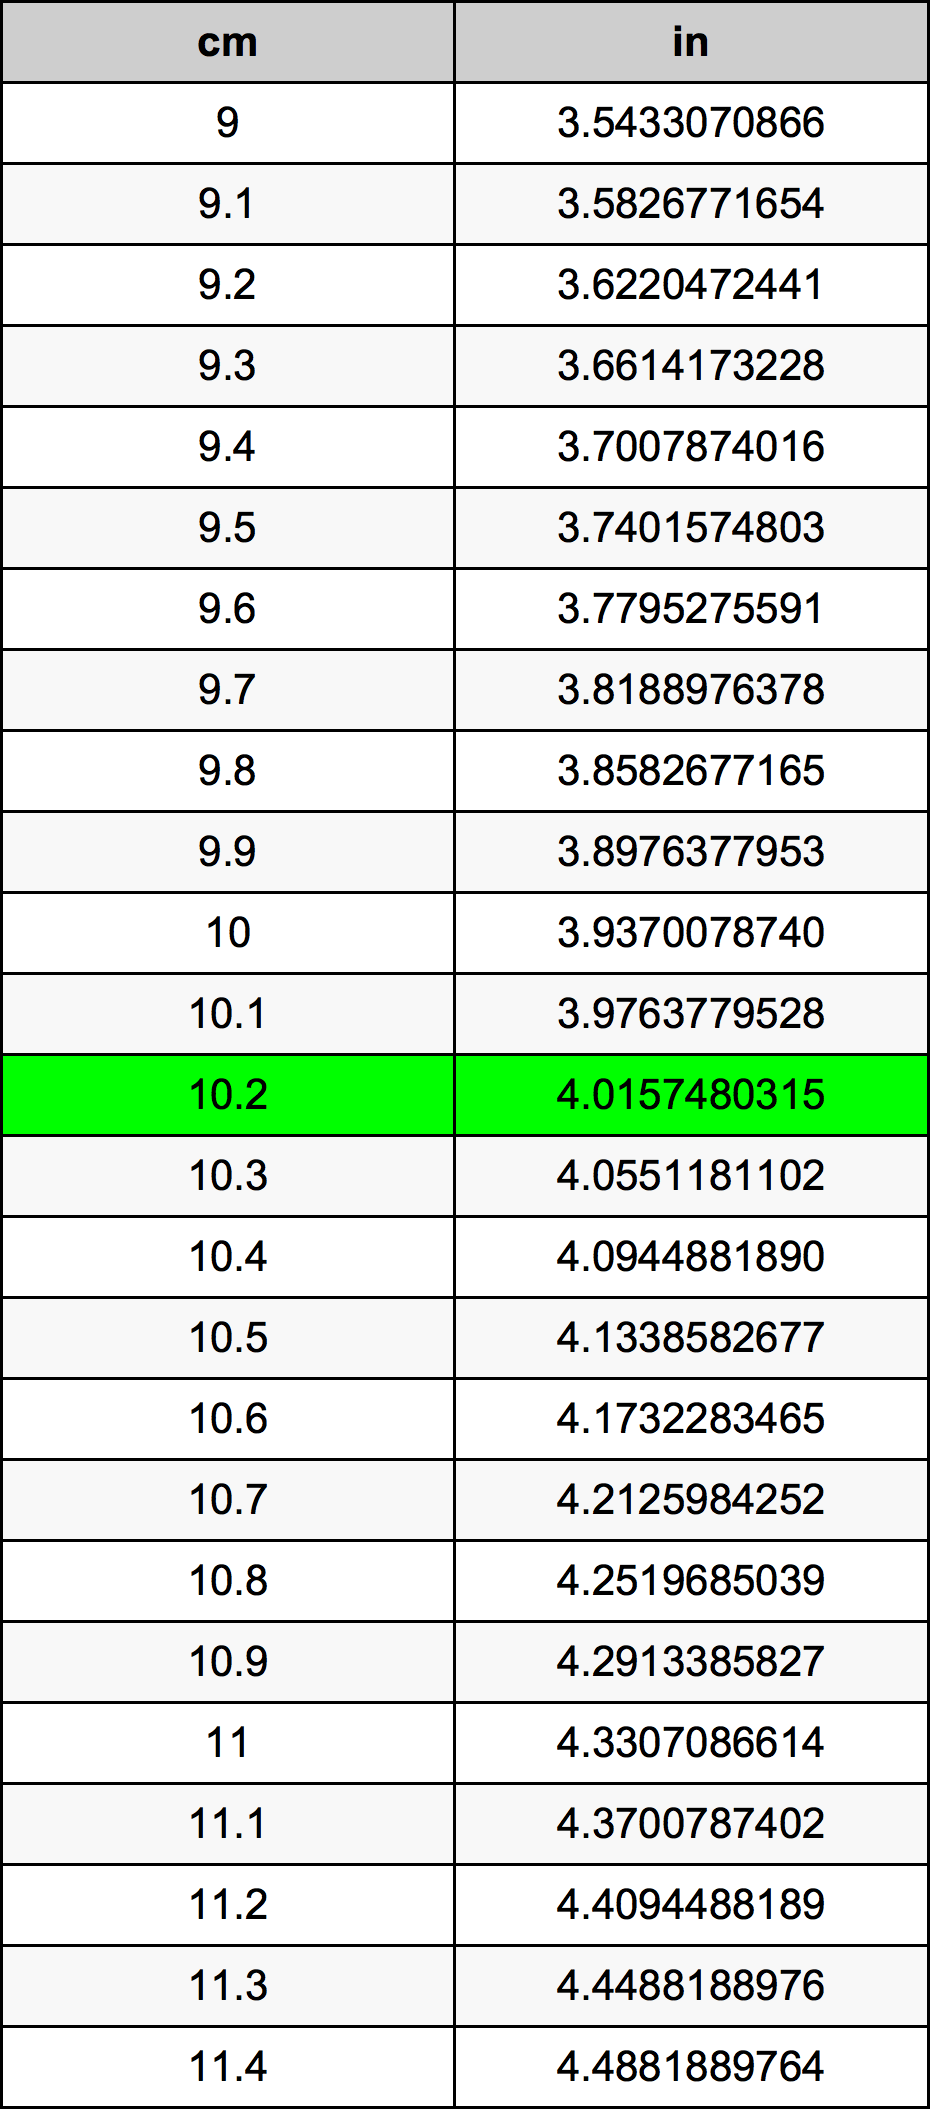 10.2 Centiméter átszámítási táblázat